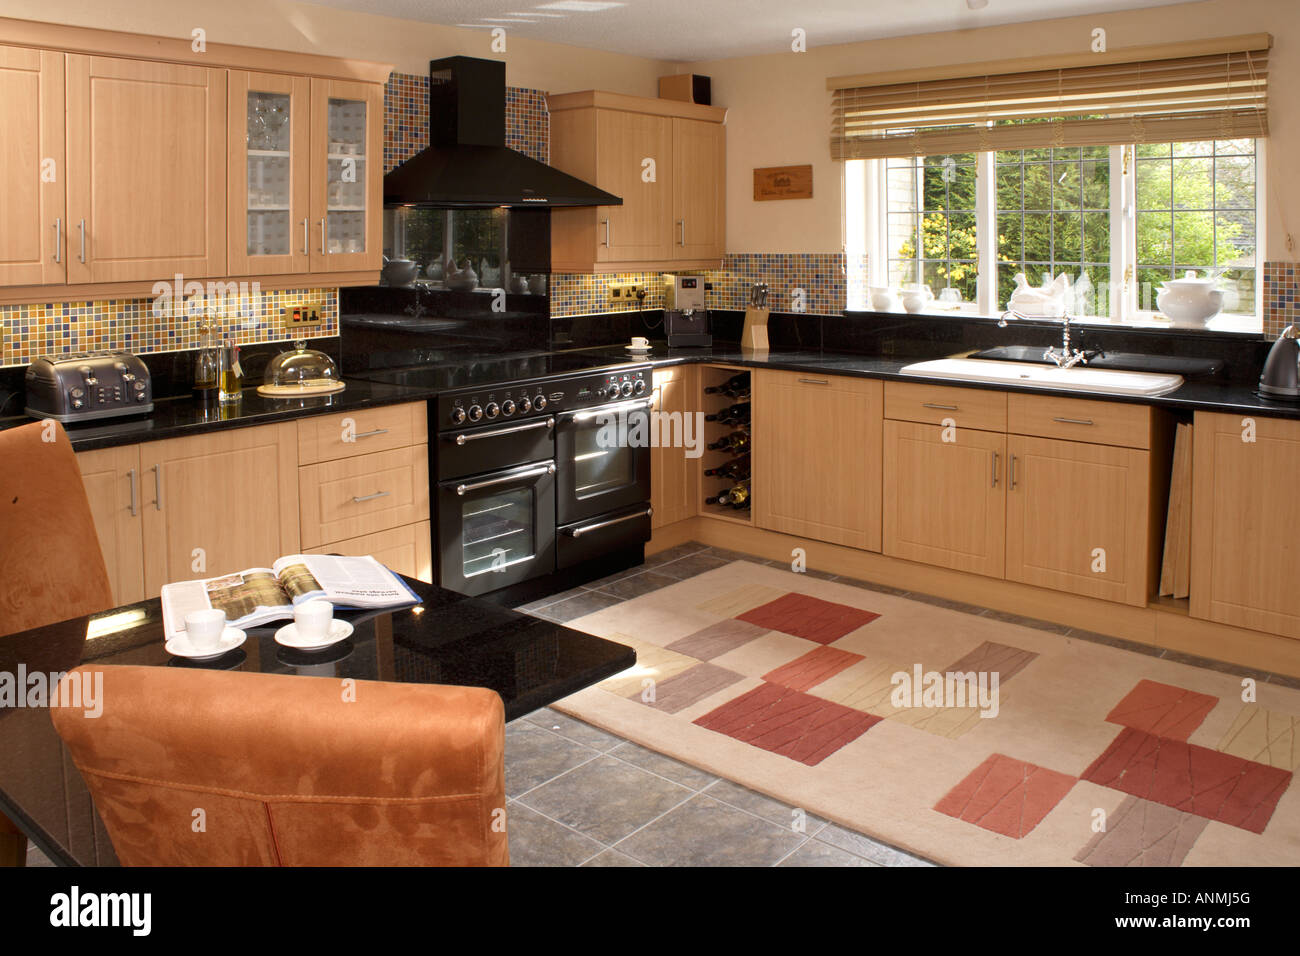 UK. Ein Haus, Interieur, stilvolle, moderne Einbauküche mit Essbereich. Stockfoto